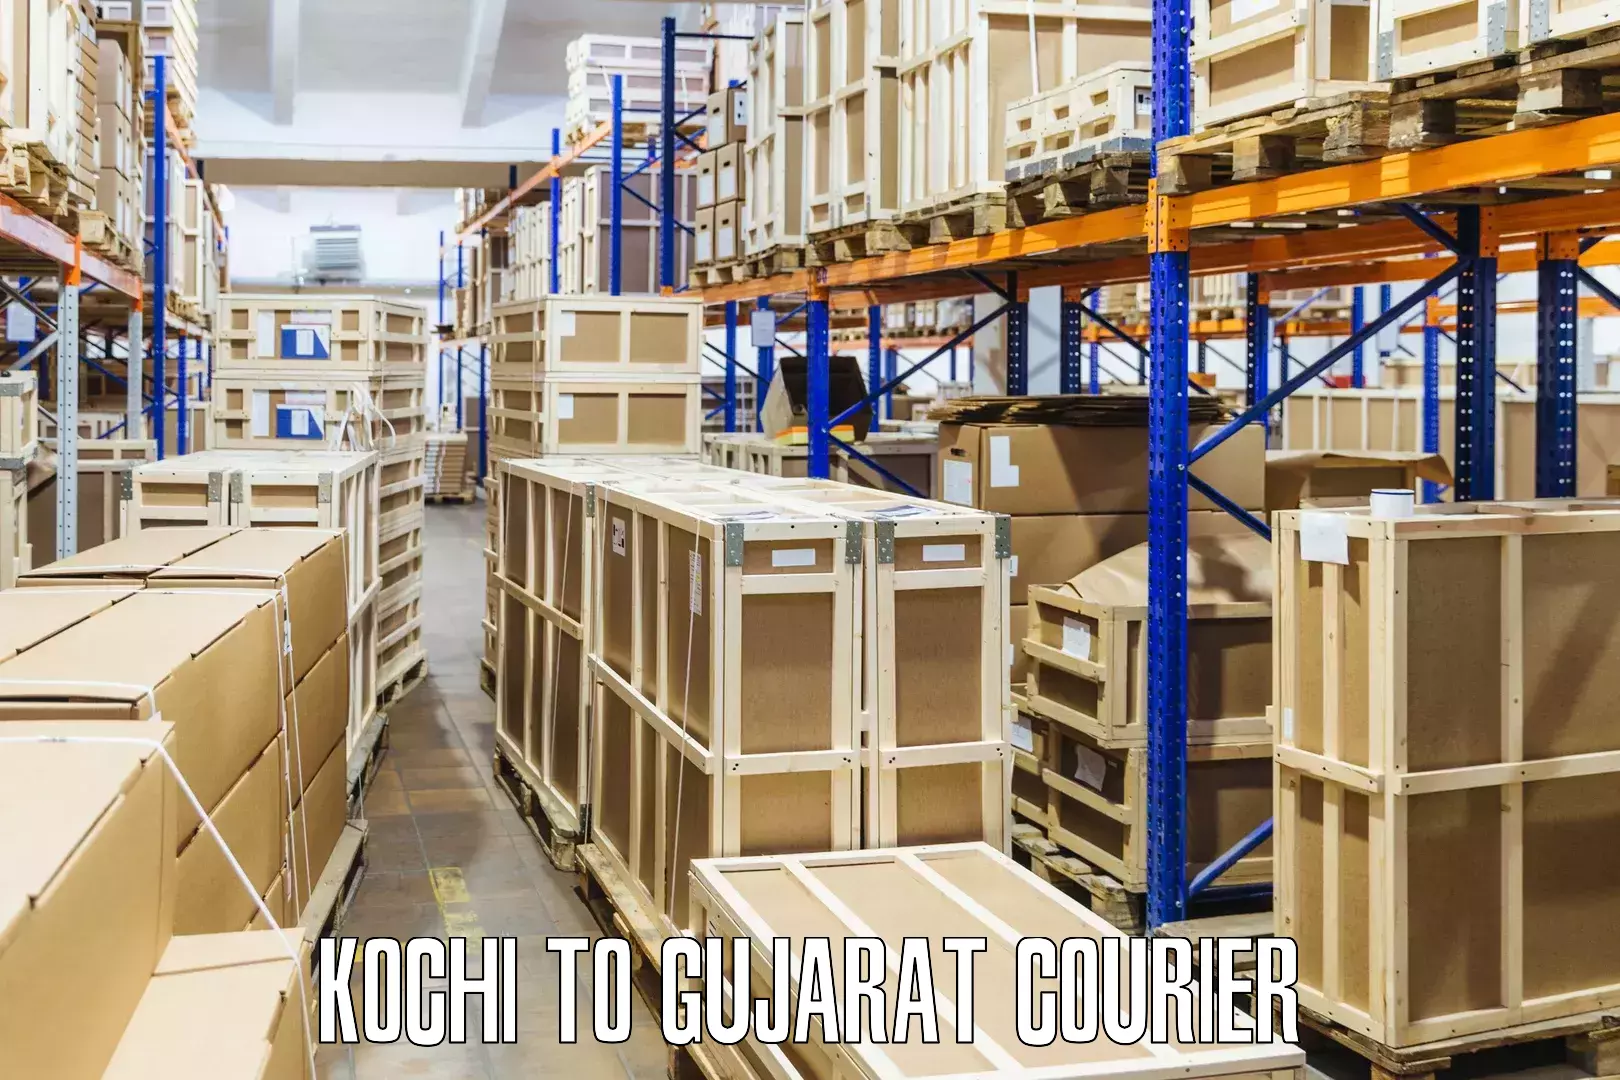 24-hour courier service Kochi to Morbi